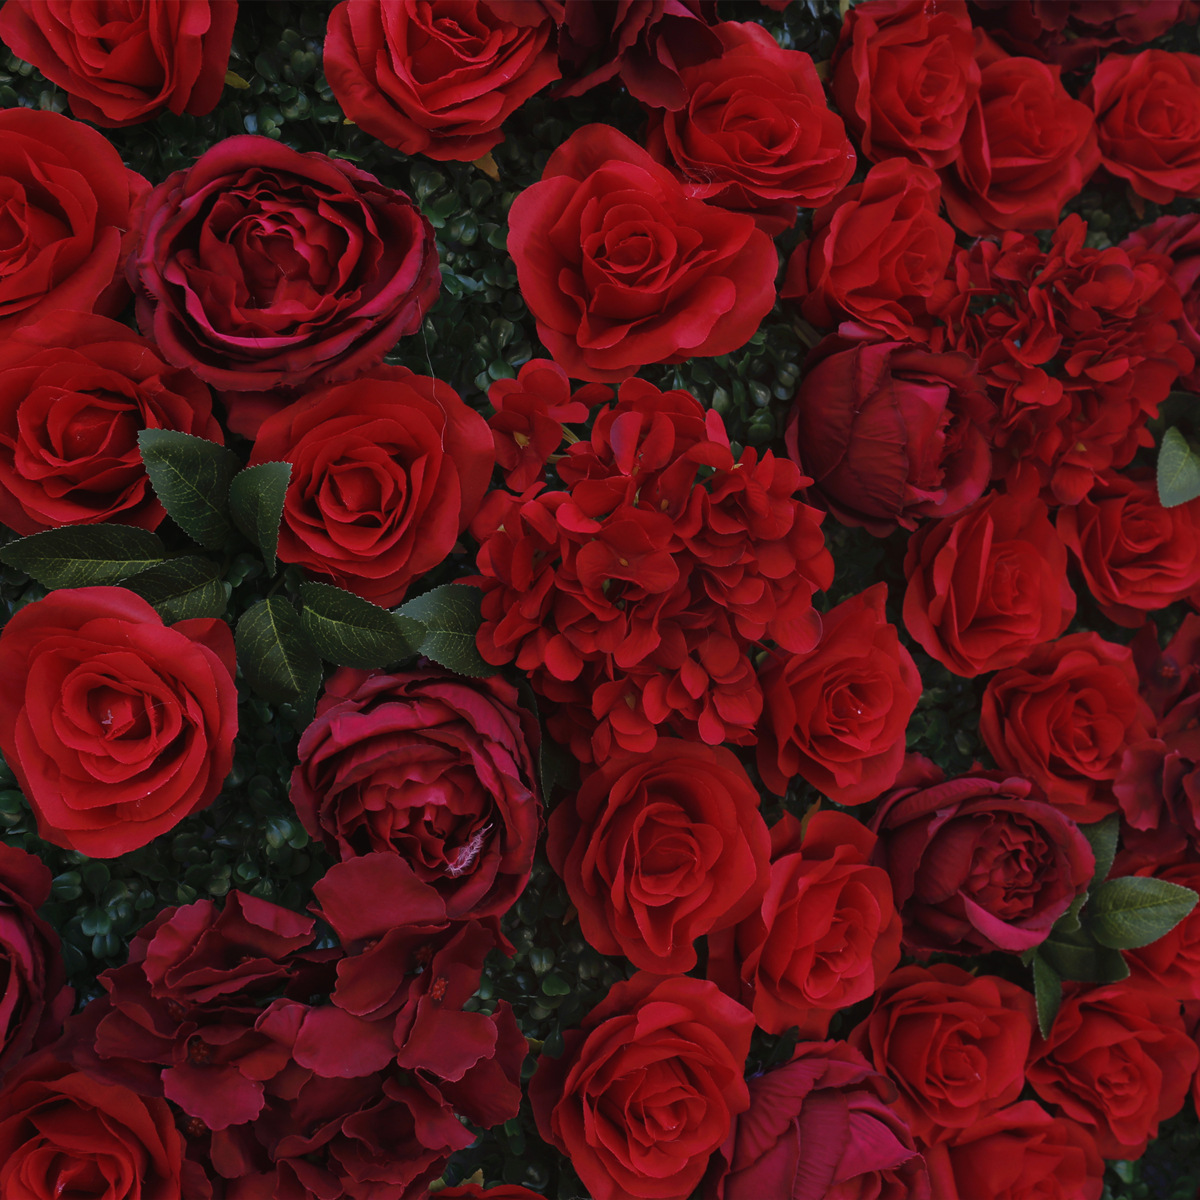 Crveno platno dno simulacija cvijet zid pozadina zid Milano trava dno vjenčanje dekoracija vjenčanje dekoracija